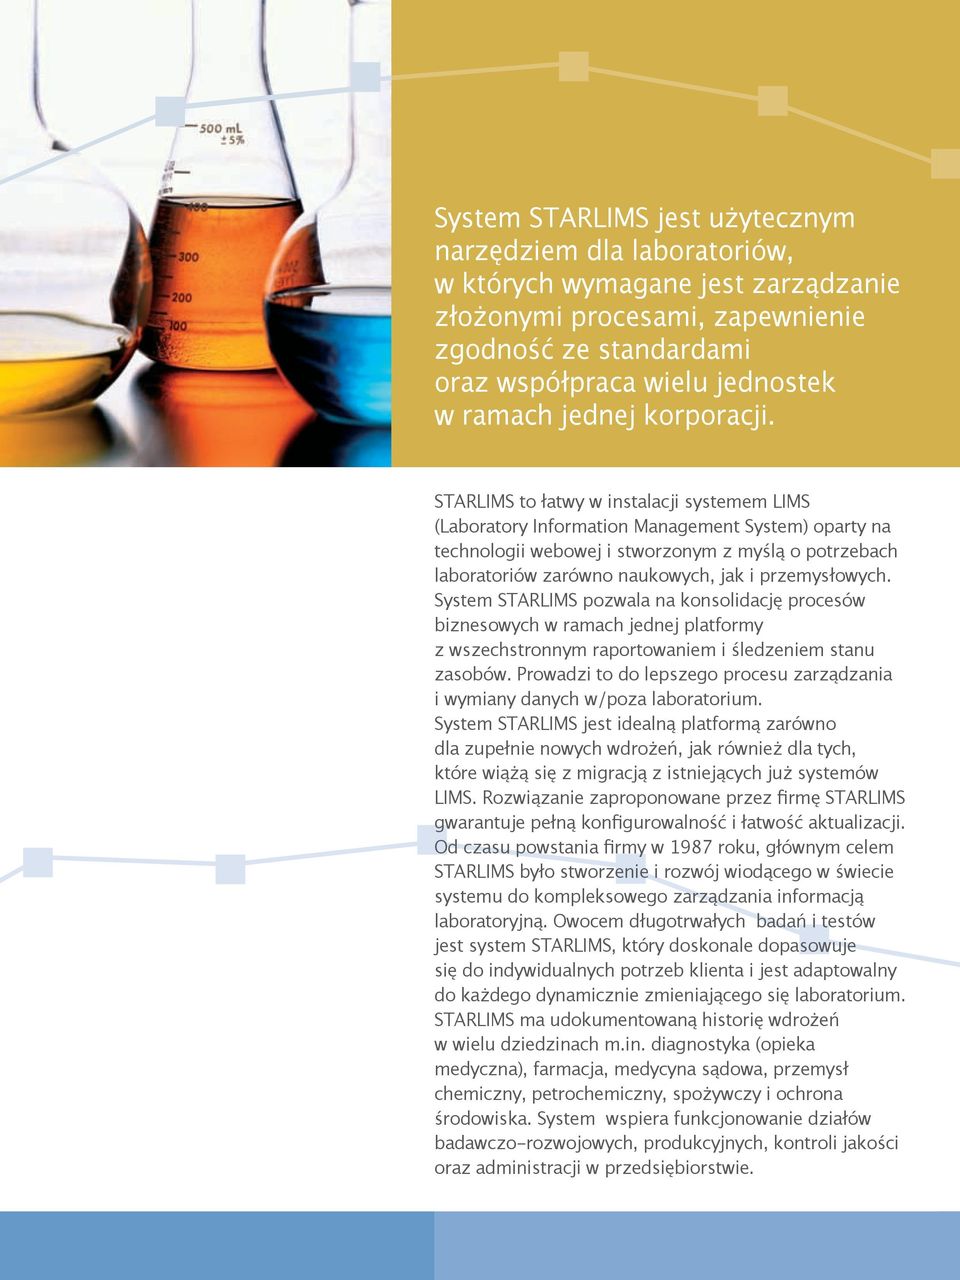 STARLIMS to łatwy w instalacji systemem LIMS (Laboratory Information Management System) oparty na technologii webowej i stworzonym z myślą o potrzebach laboratoriów zarówno naukowych, jak i